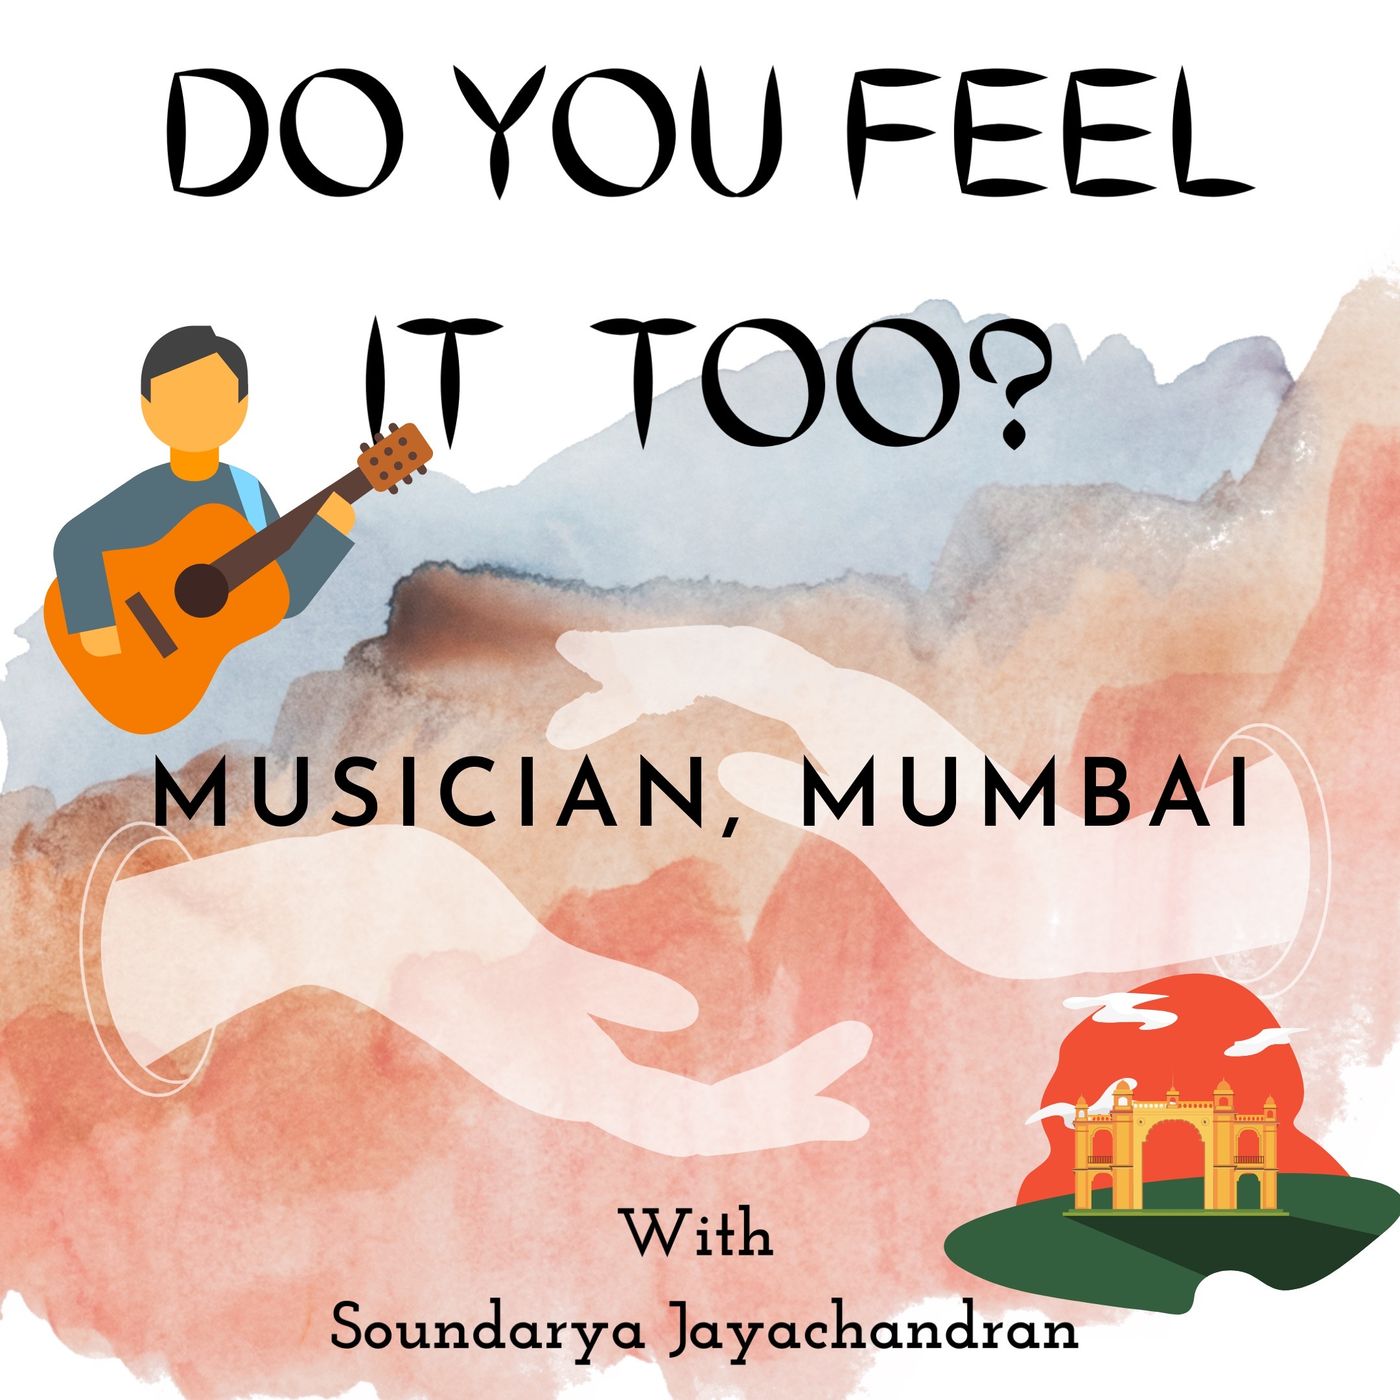 Musician, Mumbai